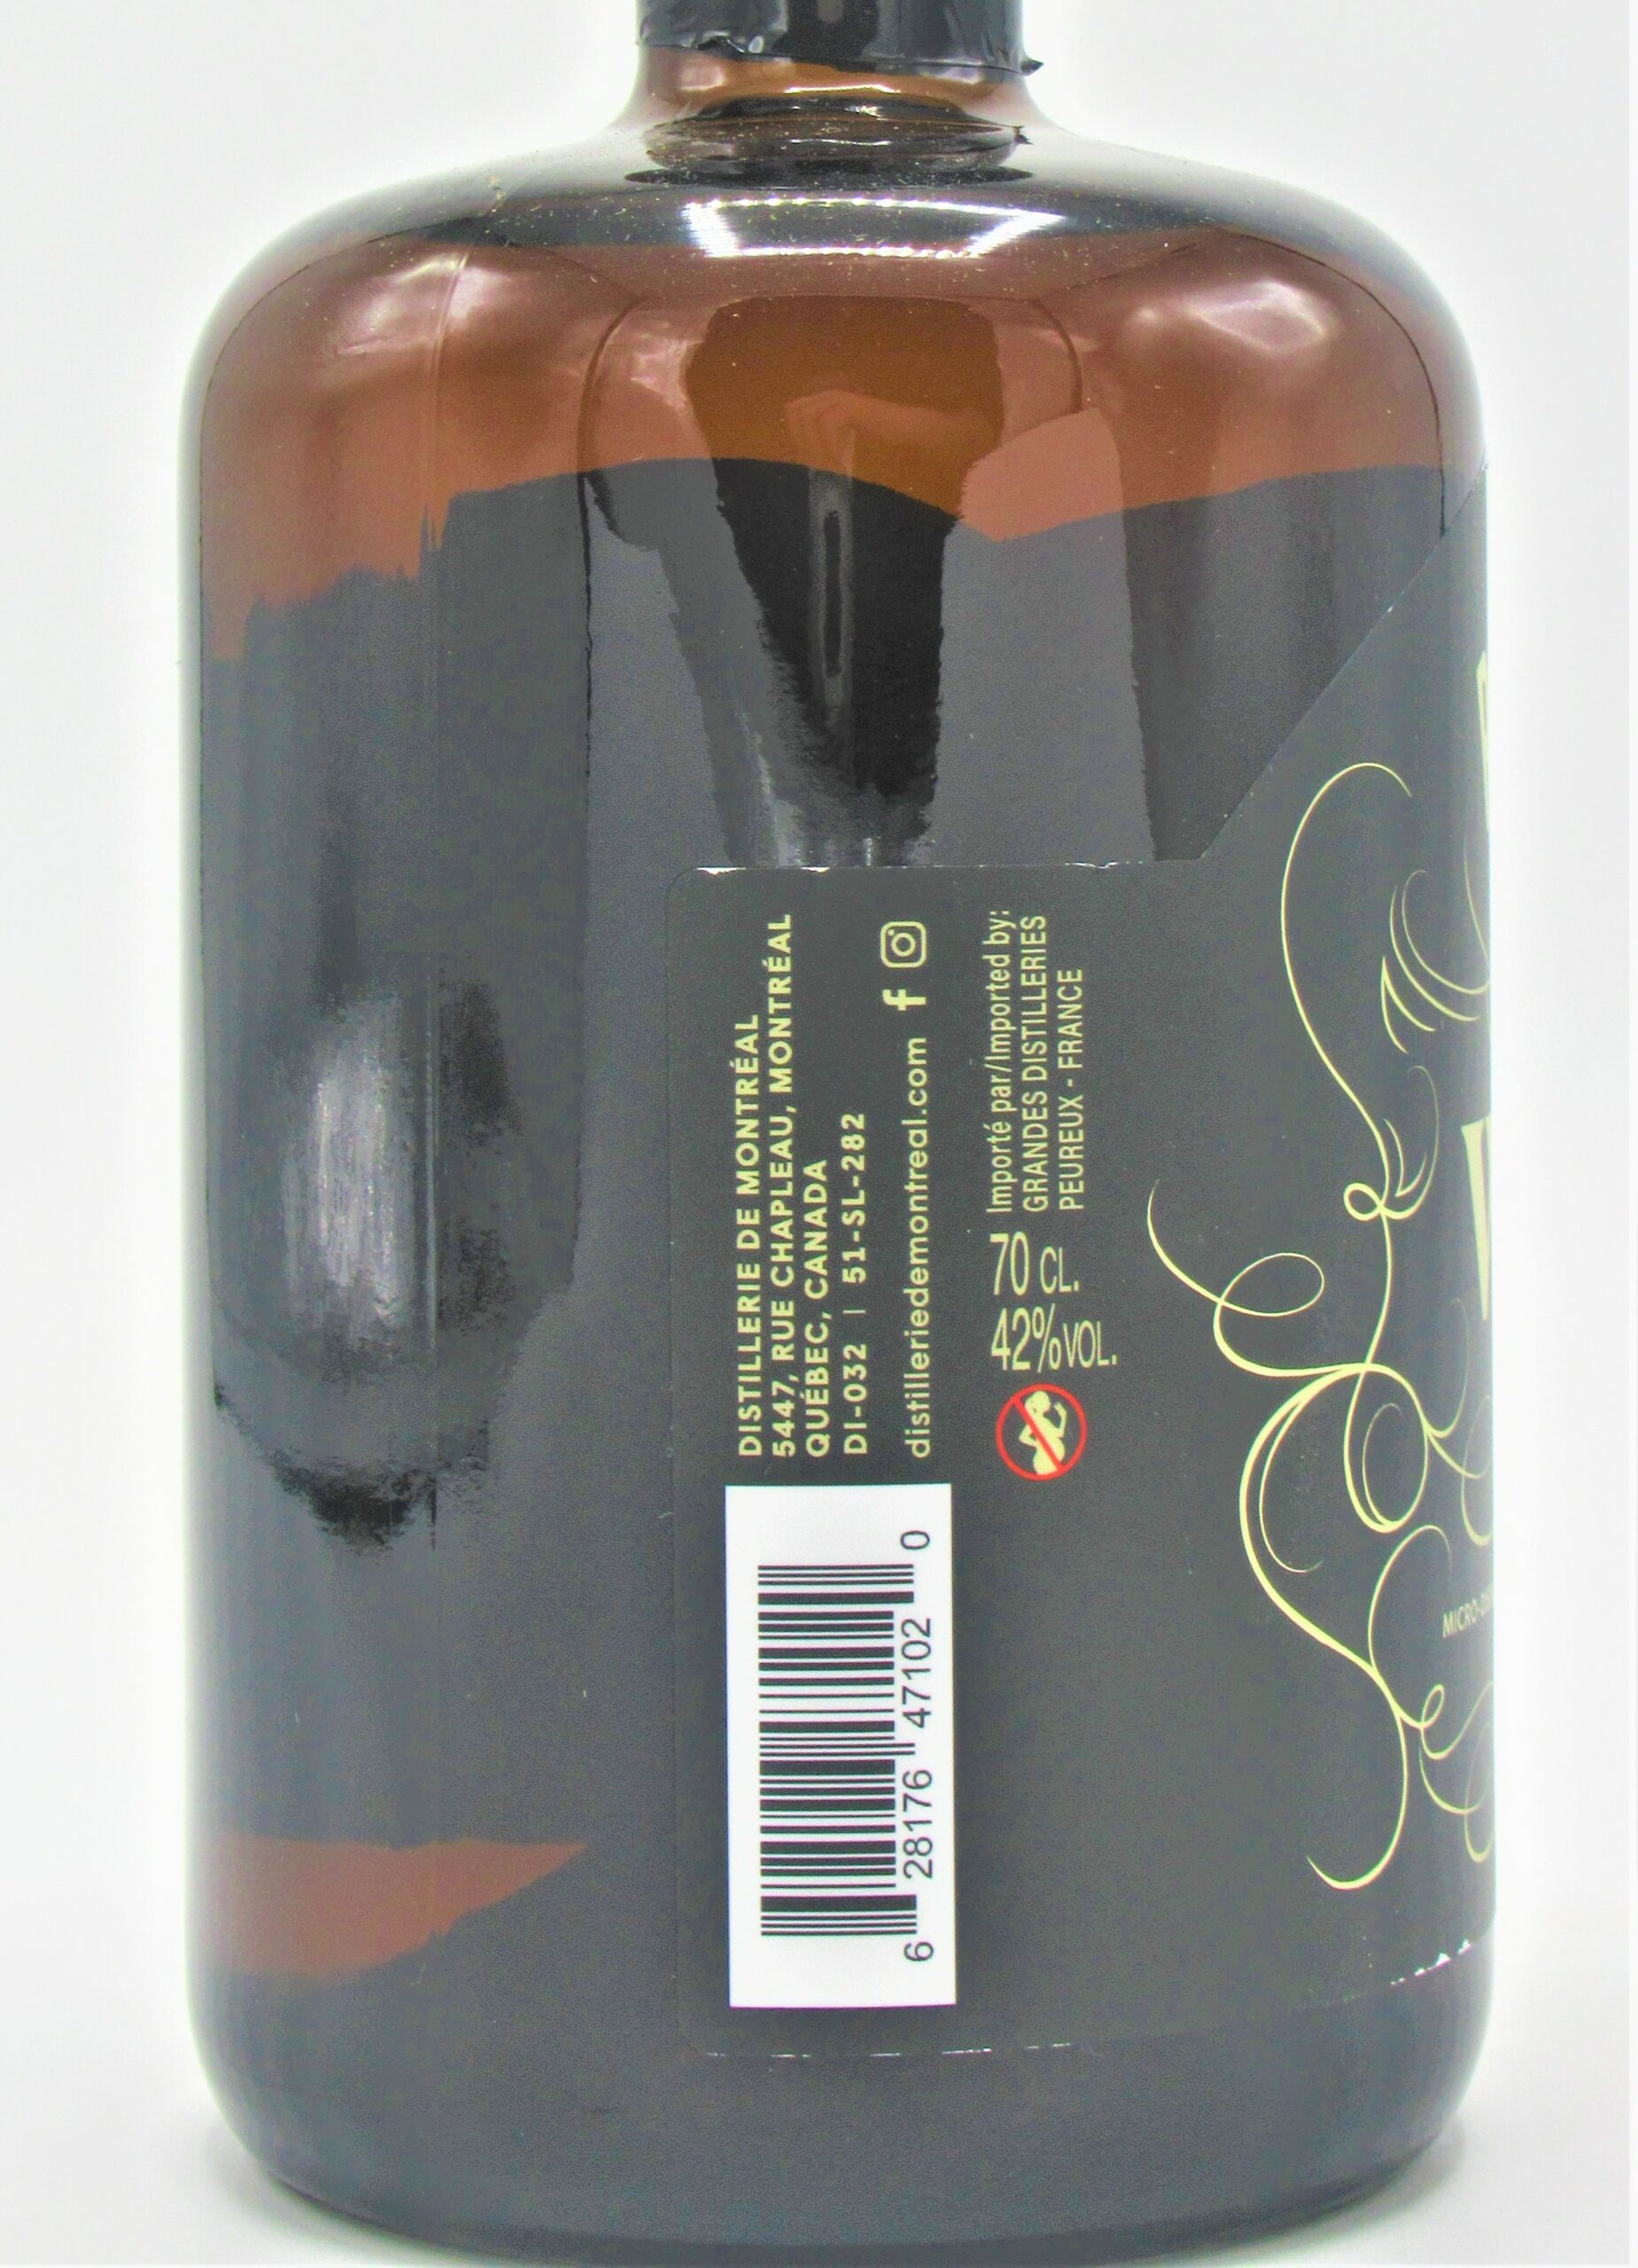 Rosemont Whisky de Montréal, Fiche produit